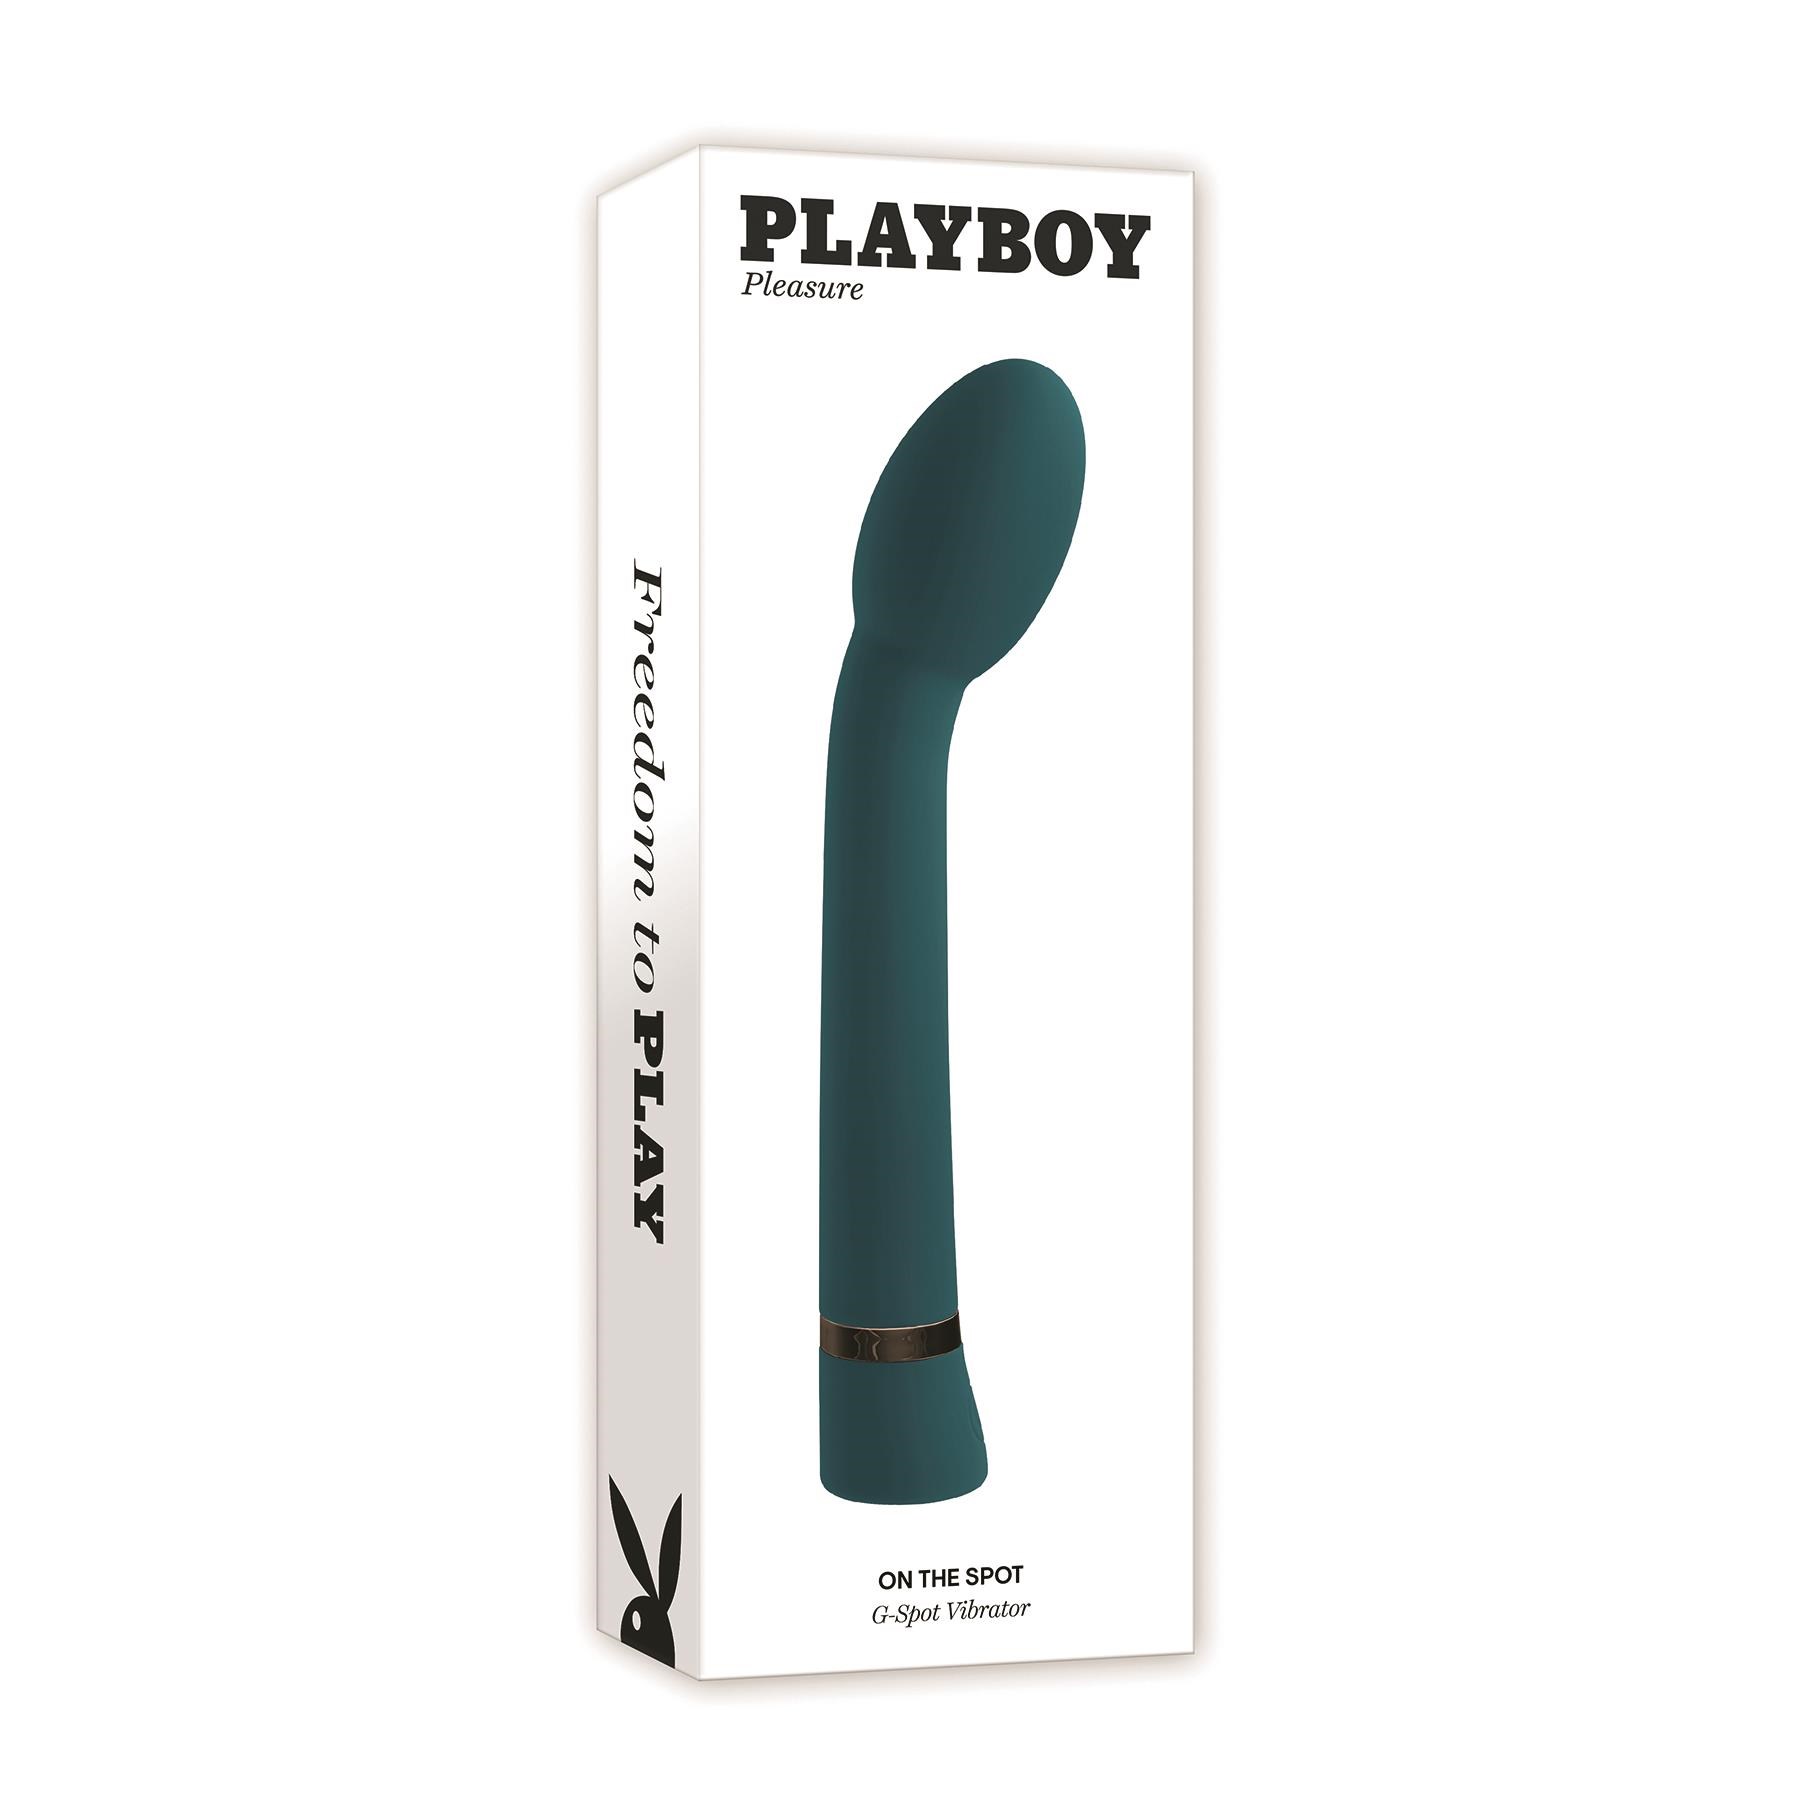 Playboy Pleasure On The Spot G-Spot Massager - Packaging